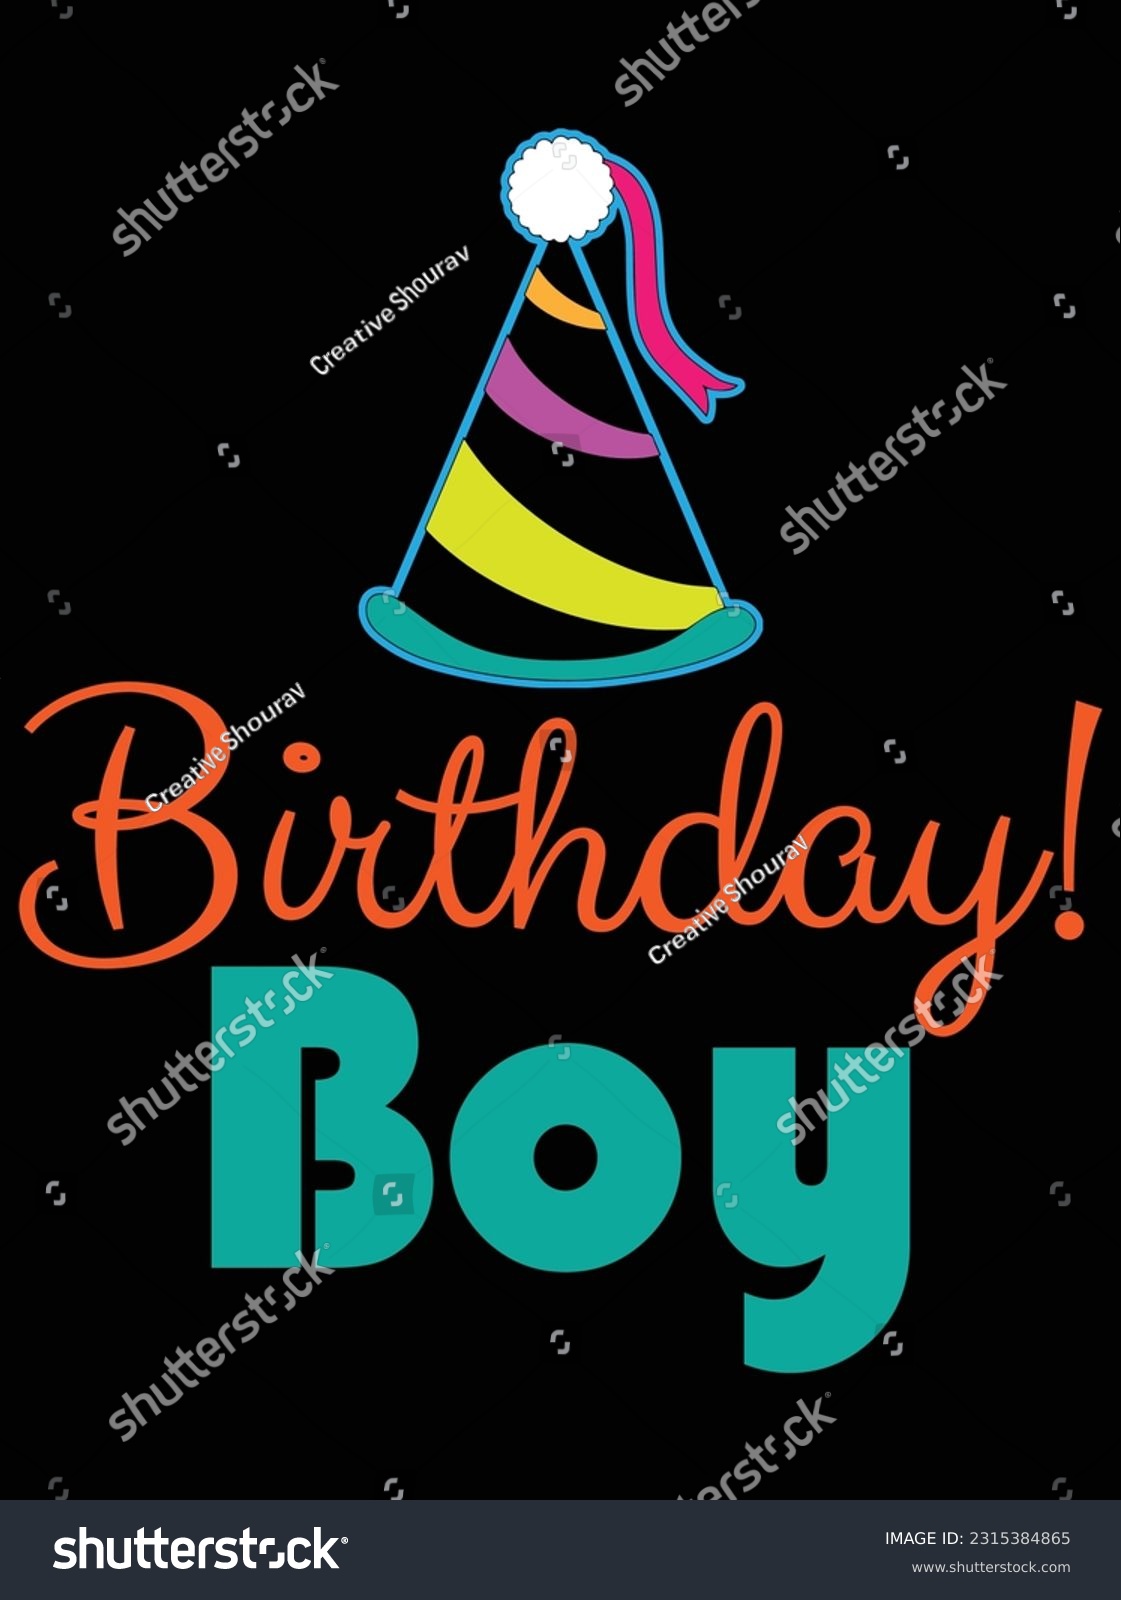 SVG of Birthday boy vector art design, eps file. design file for t-shirt. SVG, EPS cuttable design file svg